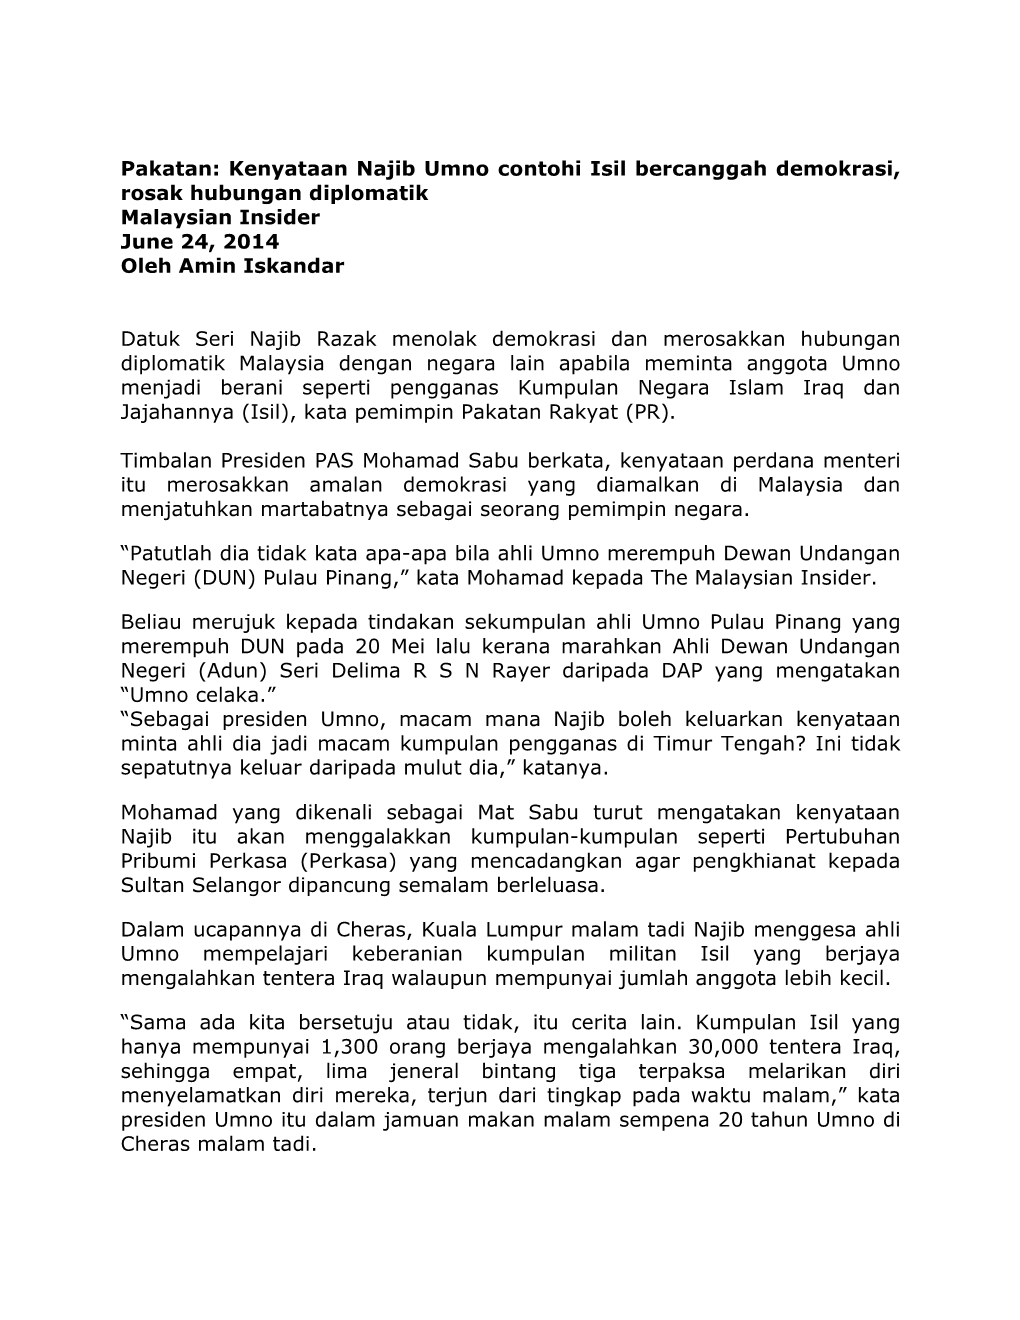 Kenyataan Najib Umno Contohi Isil Bercanggah Demokrasi, Rosak Hubungan Diplomatik Malaysian Insider June 24, 2014 Oleh Amin Iskandar